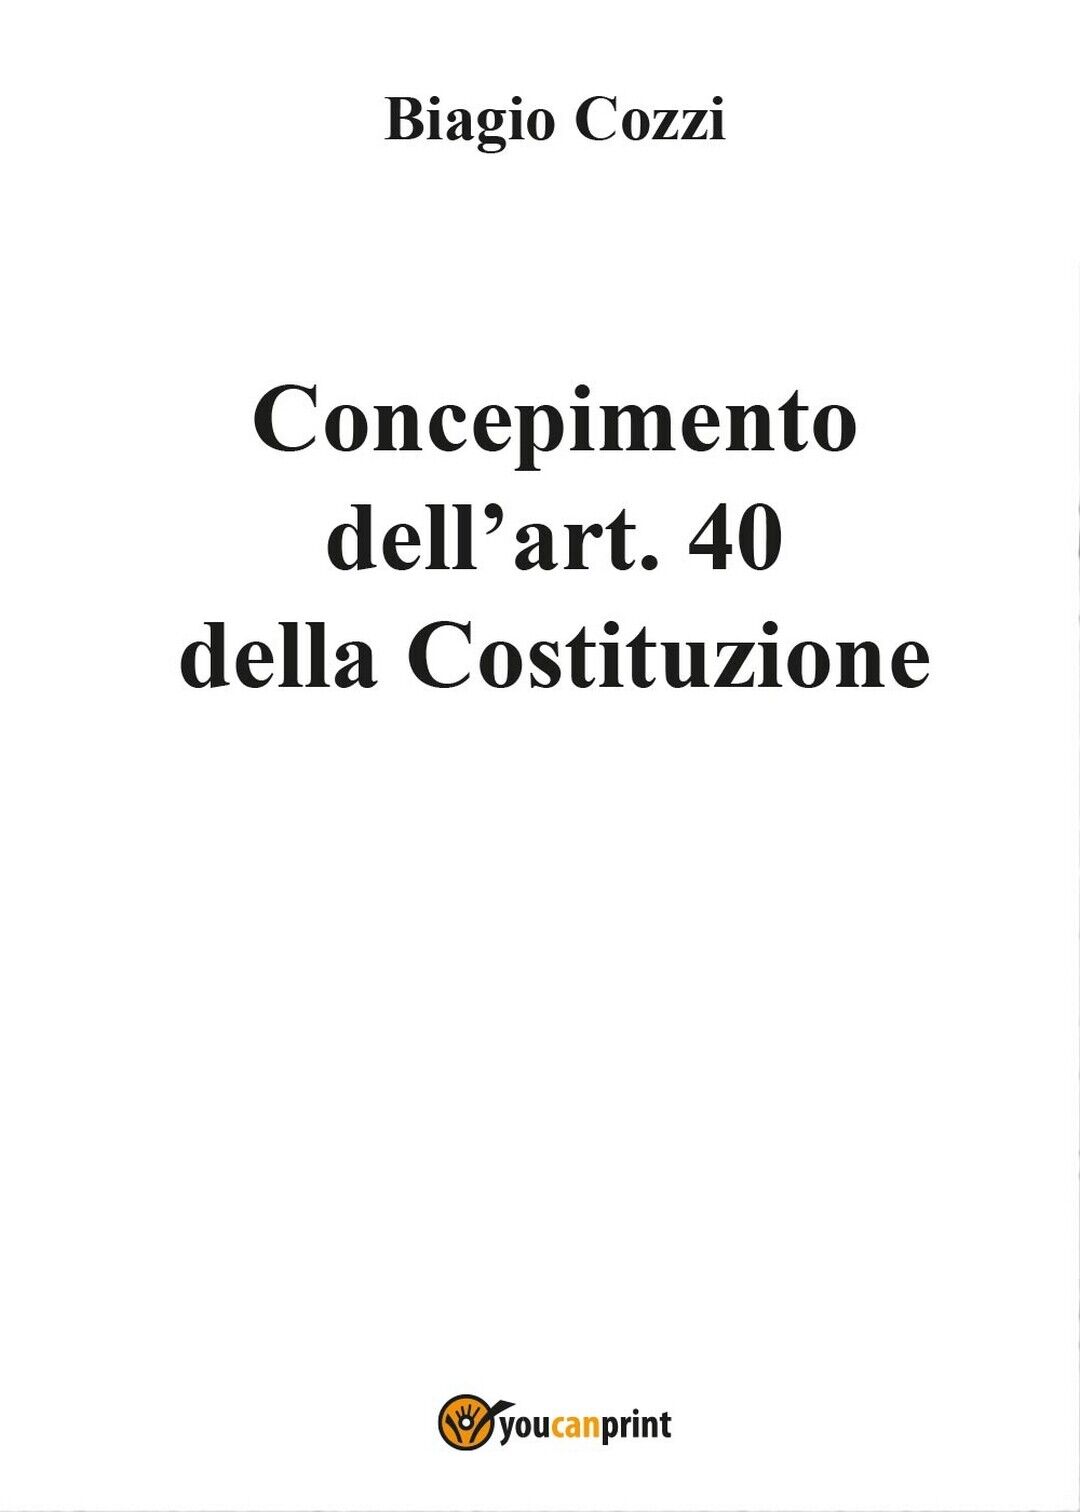 Concepimento delL'art. 40 della Costituzione, Biagio Cozzi,  2017,  Youcanprint